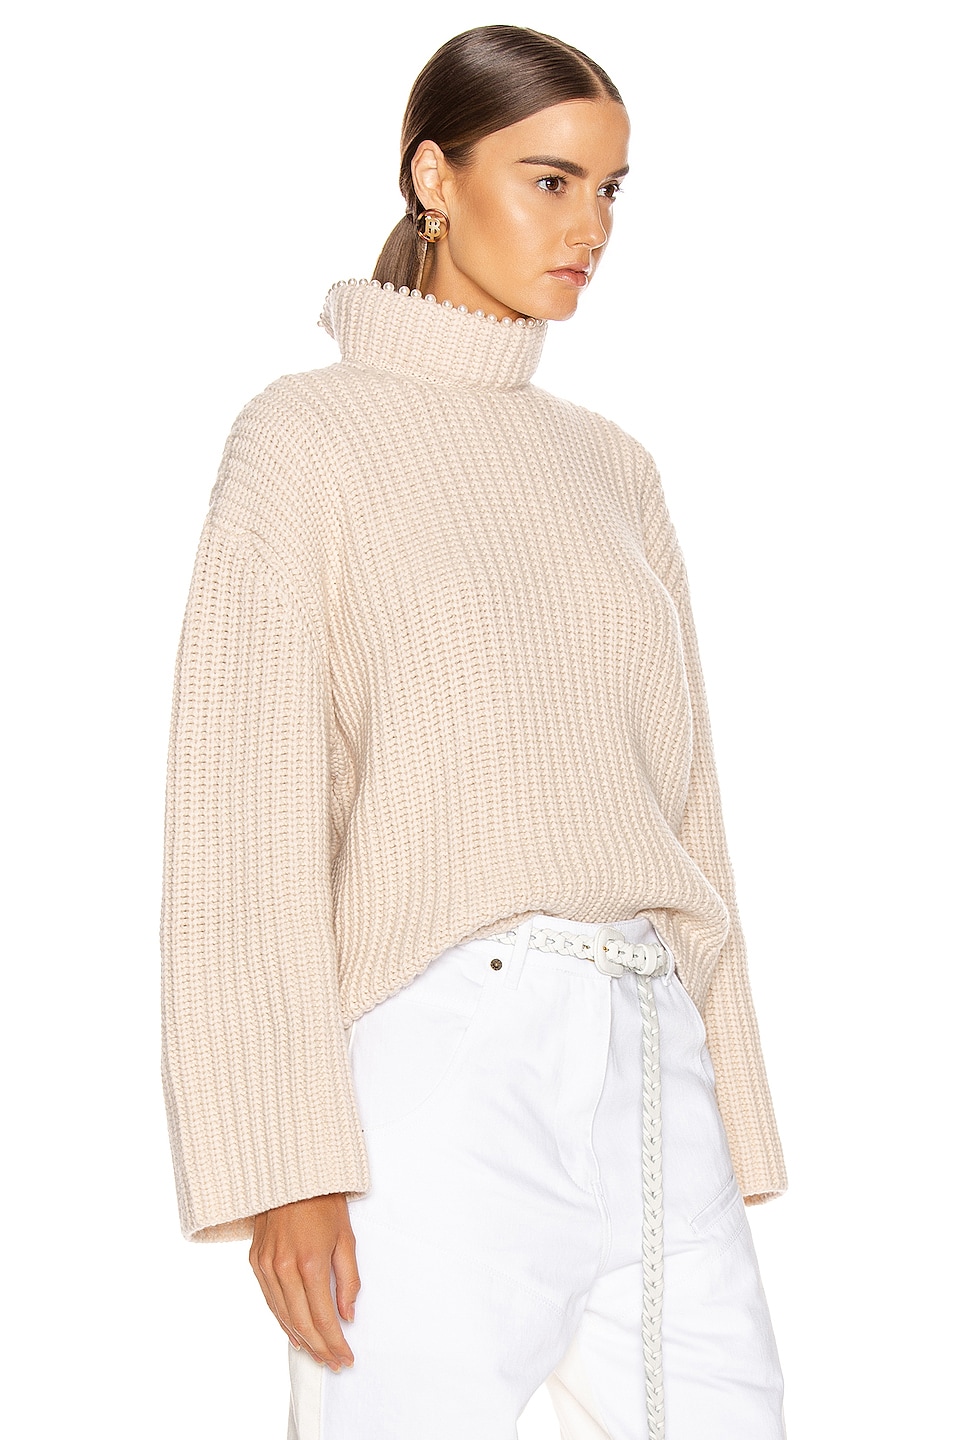 Loewe Pearls Cropped Sweater in Light Beige | FWRD